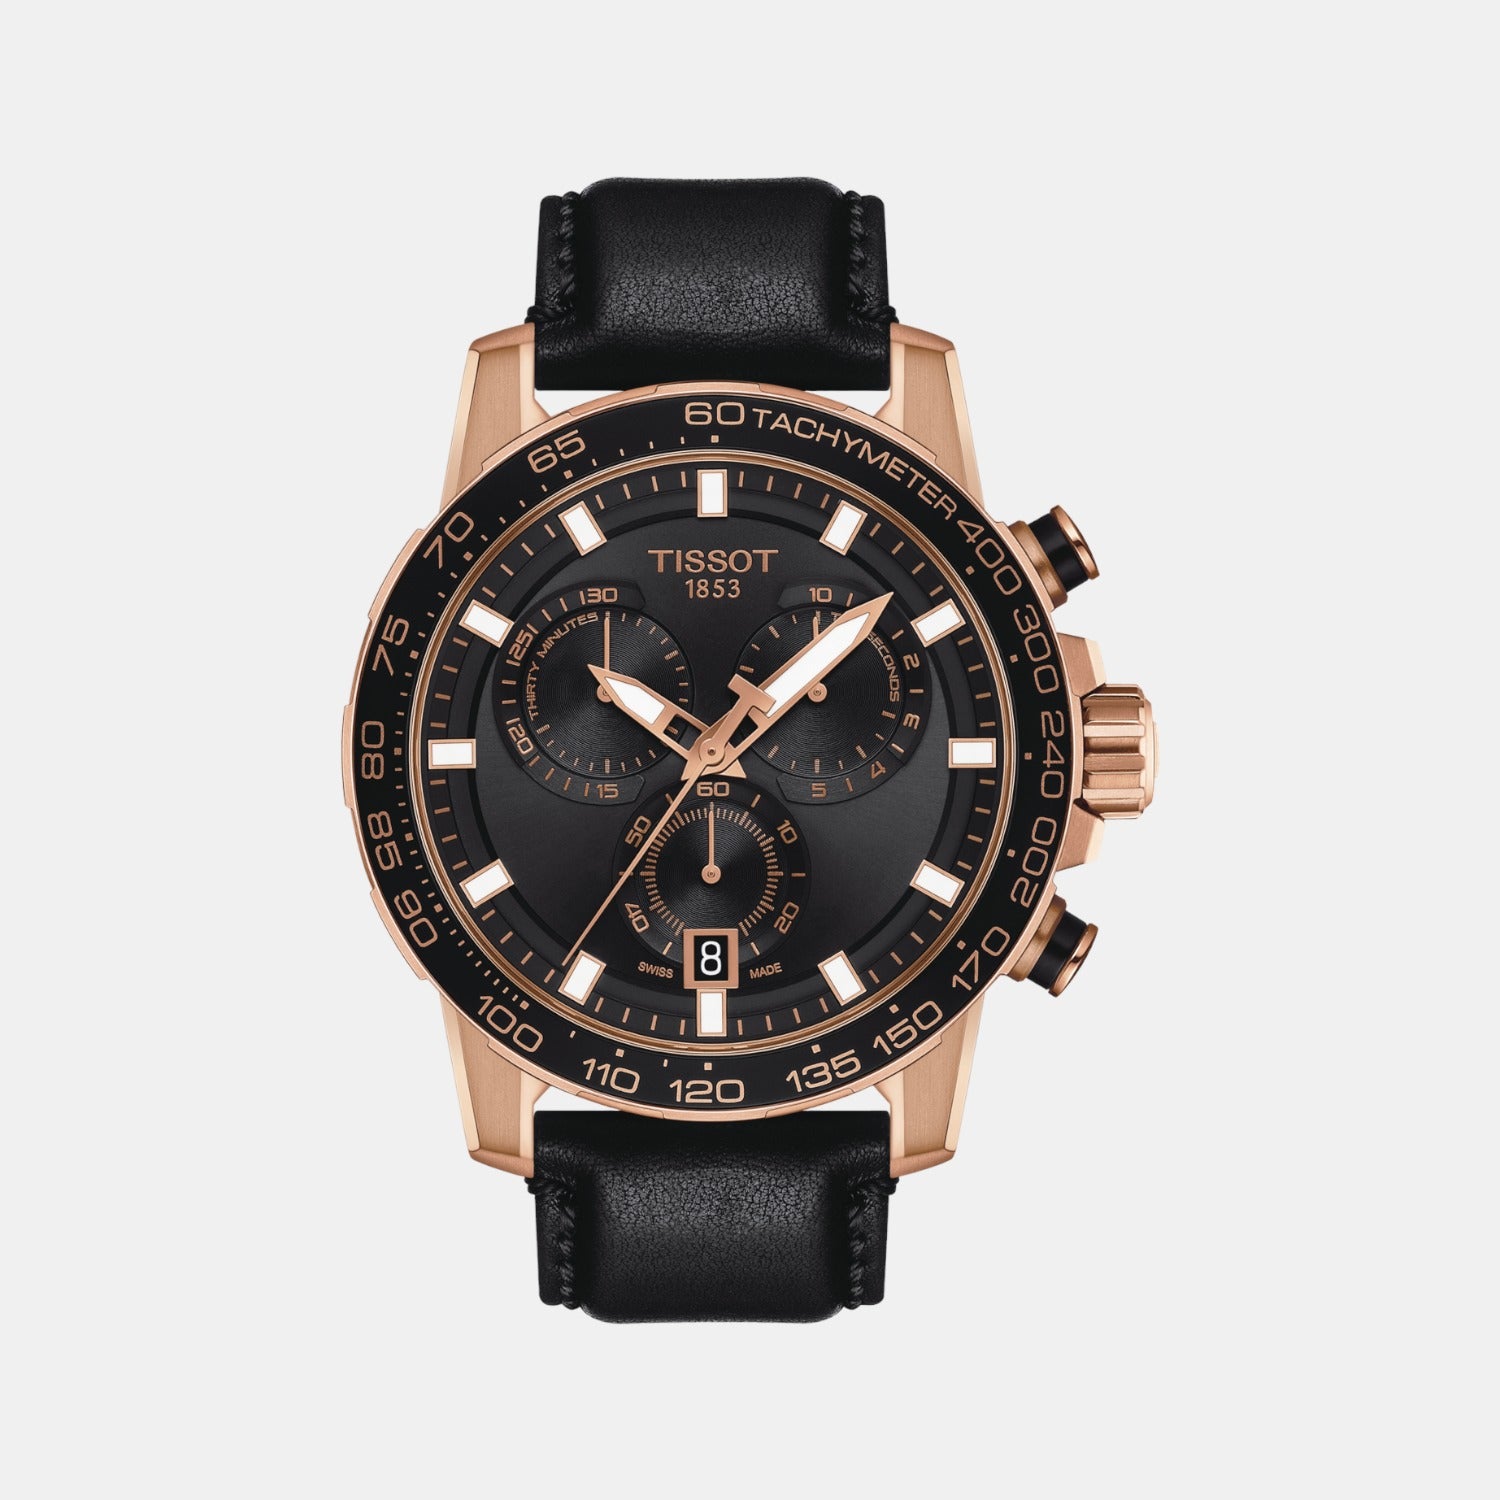 Buy Online Titan Octane Black Dial Chrono Metal Strap watch for Men -  nr1762km02 | Titan